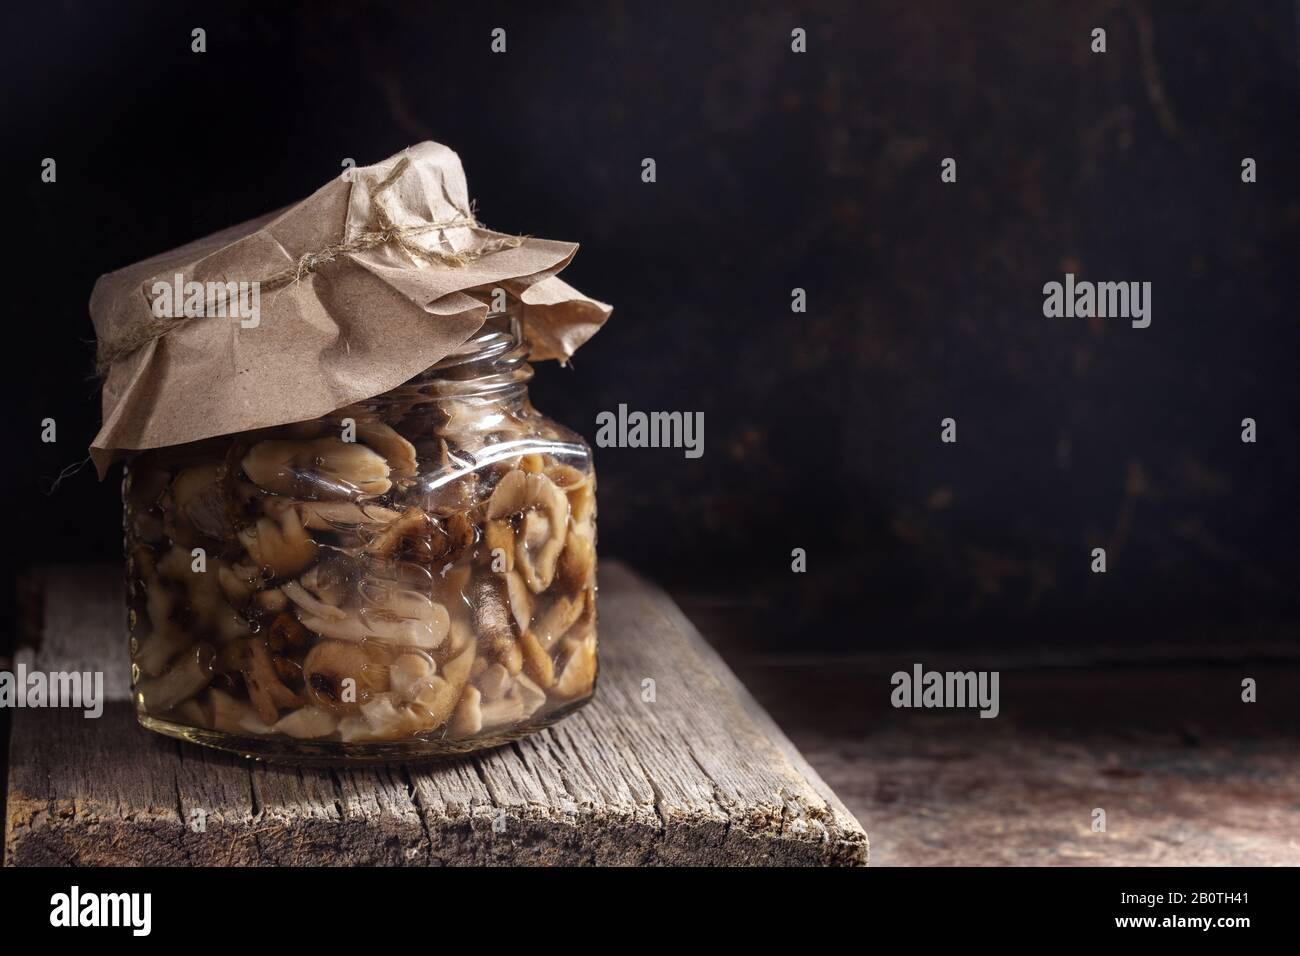 Glasbecher mit eingepickten Waldpilzen Honigagarika unter Papierabdeckung auf altem Holzbrett in dunkler rostiger Metallkulisse. Fermentierte gesunde Lebensmittel. Sust Stockfoto